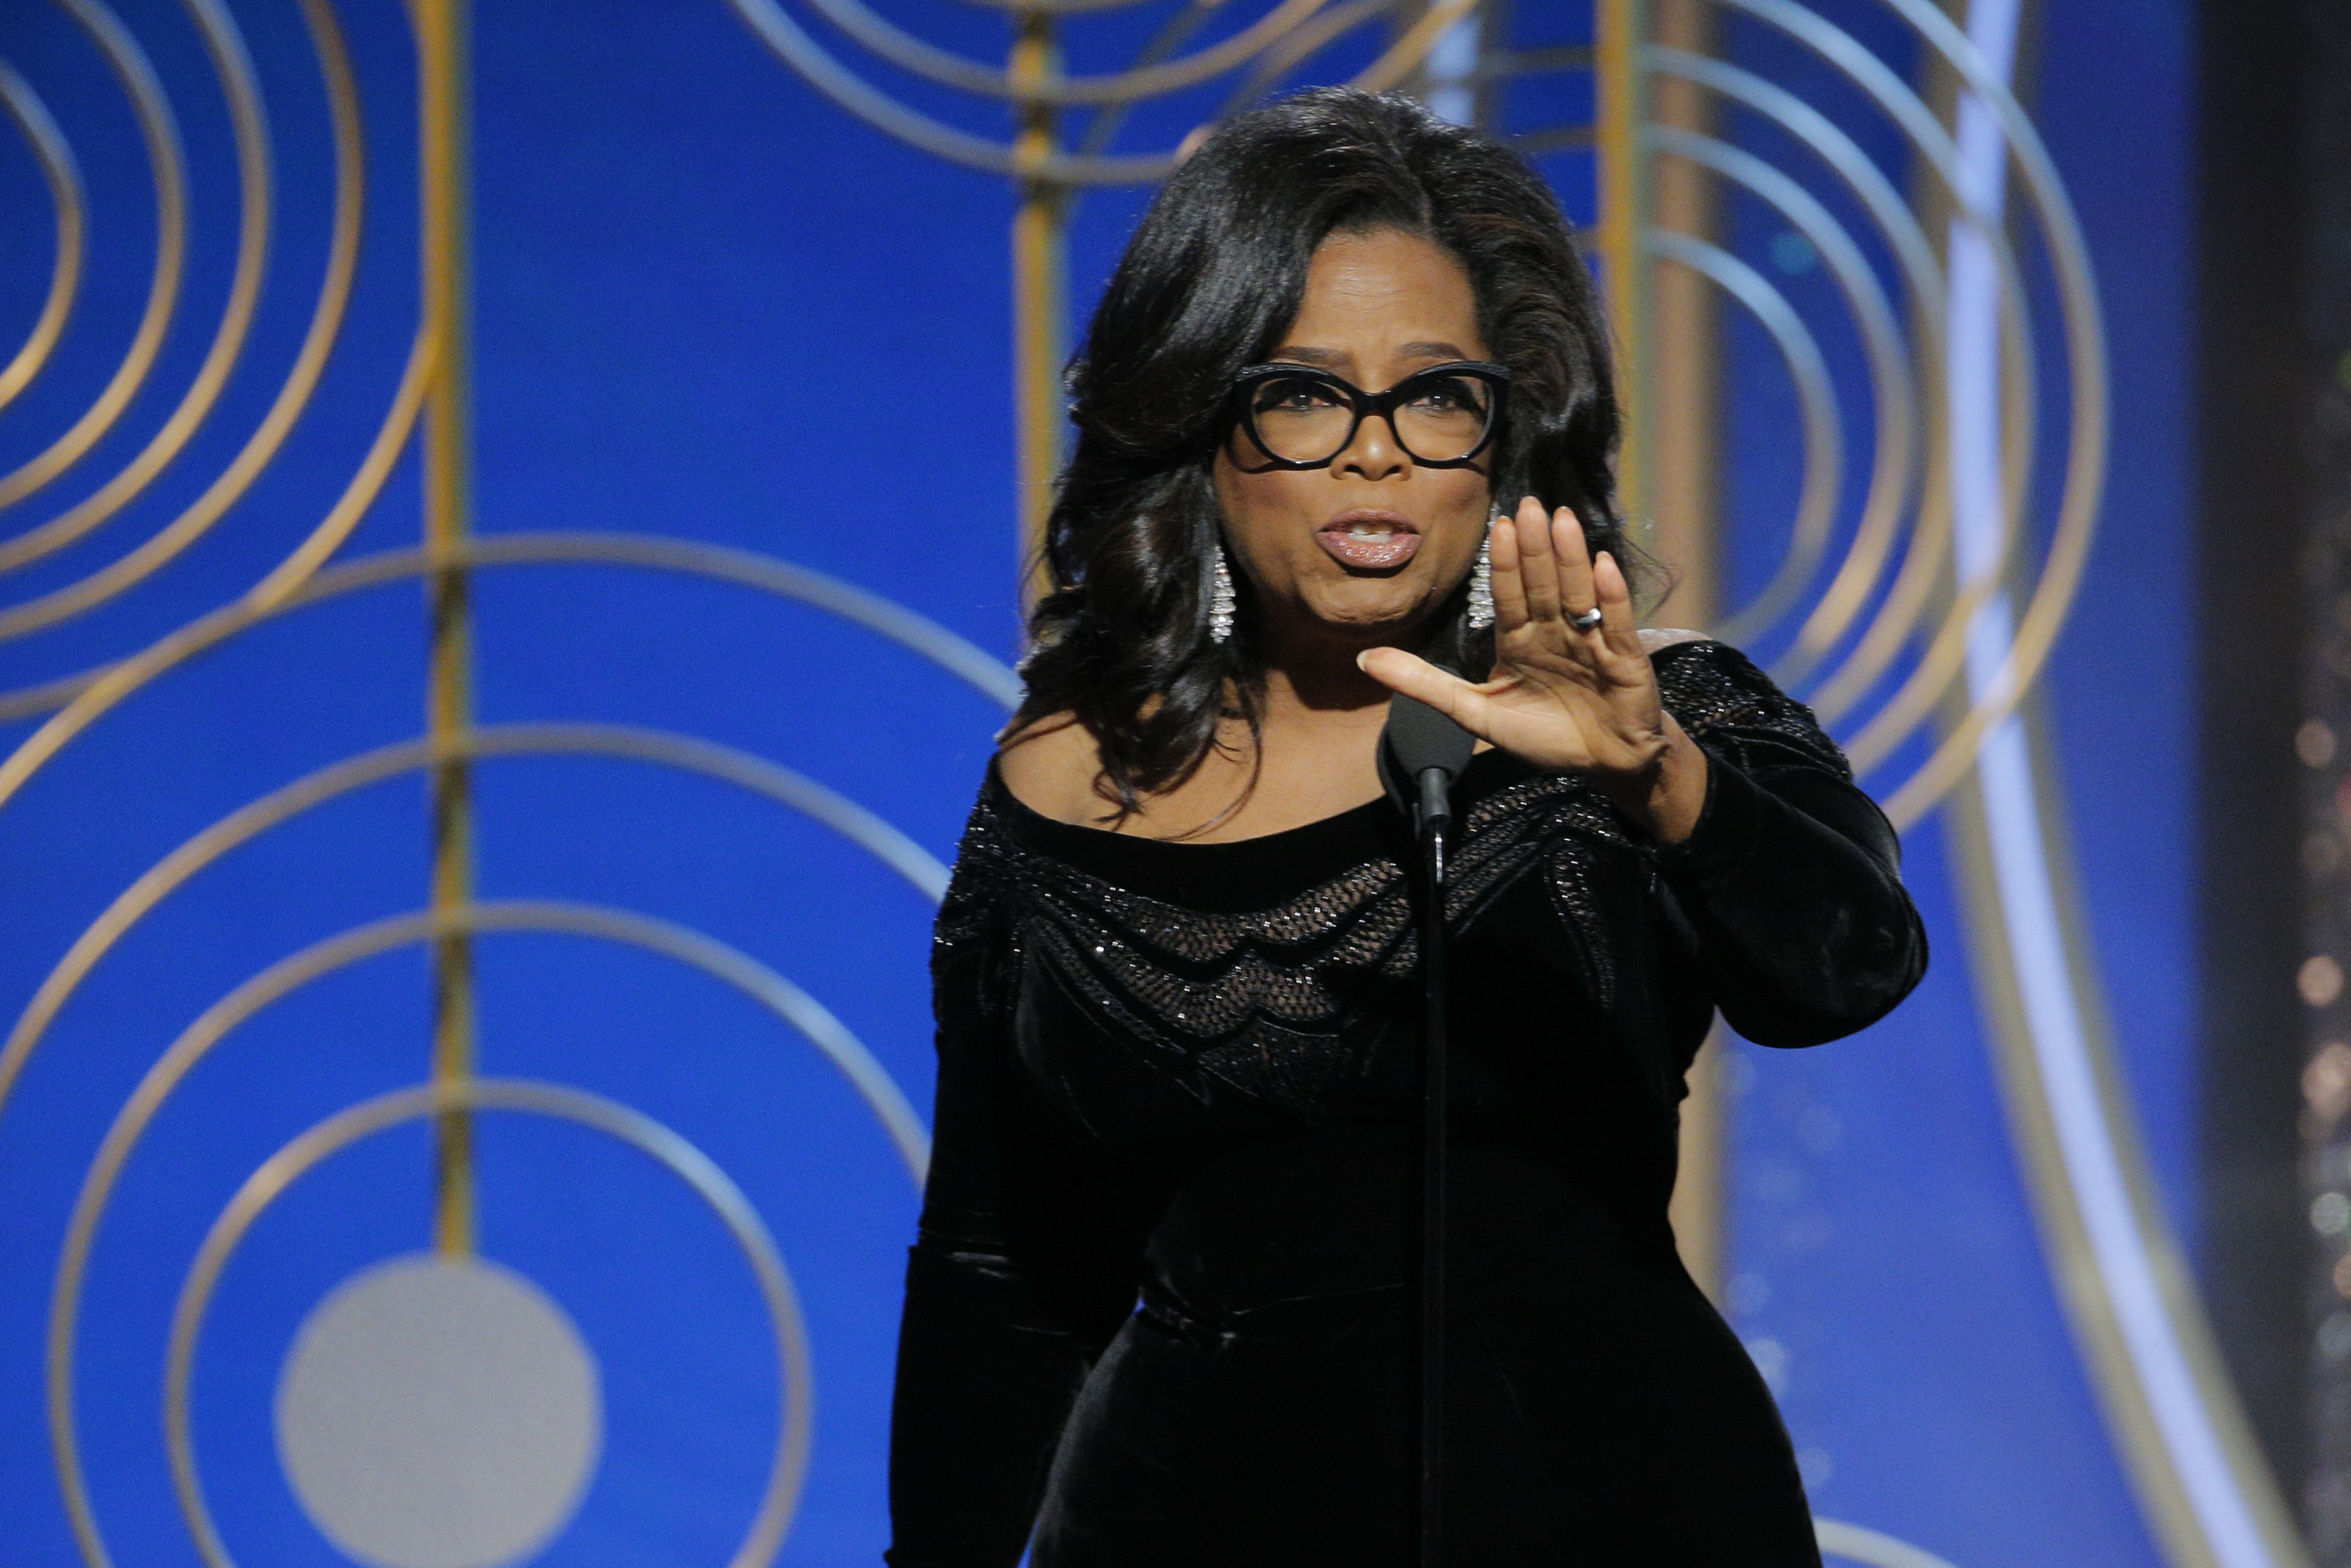 Oprah Winfrey at the 2018 Golden Globes.